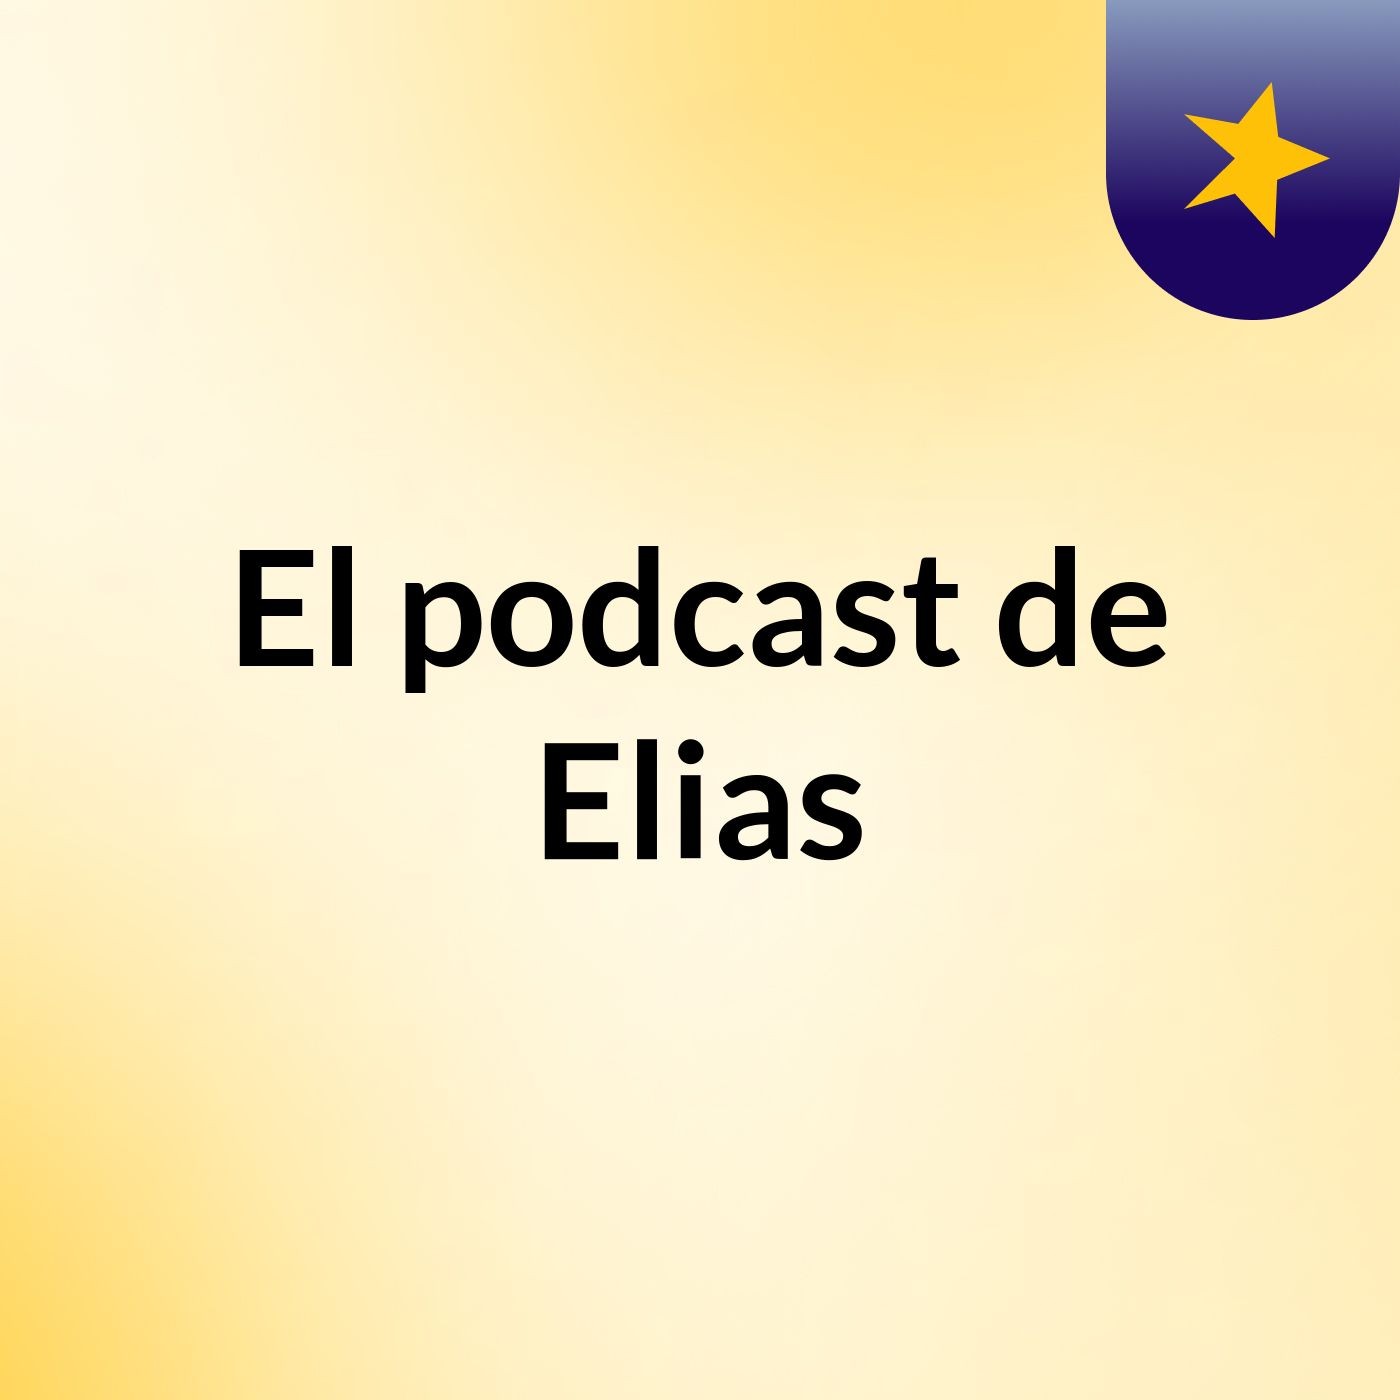 El podcast de Elias